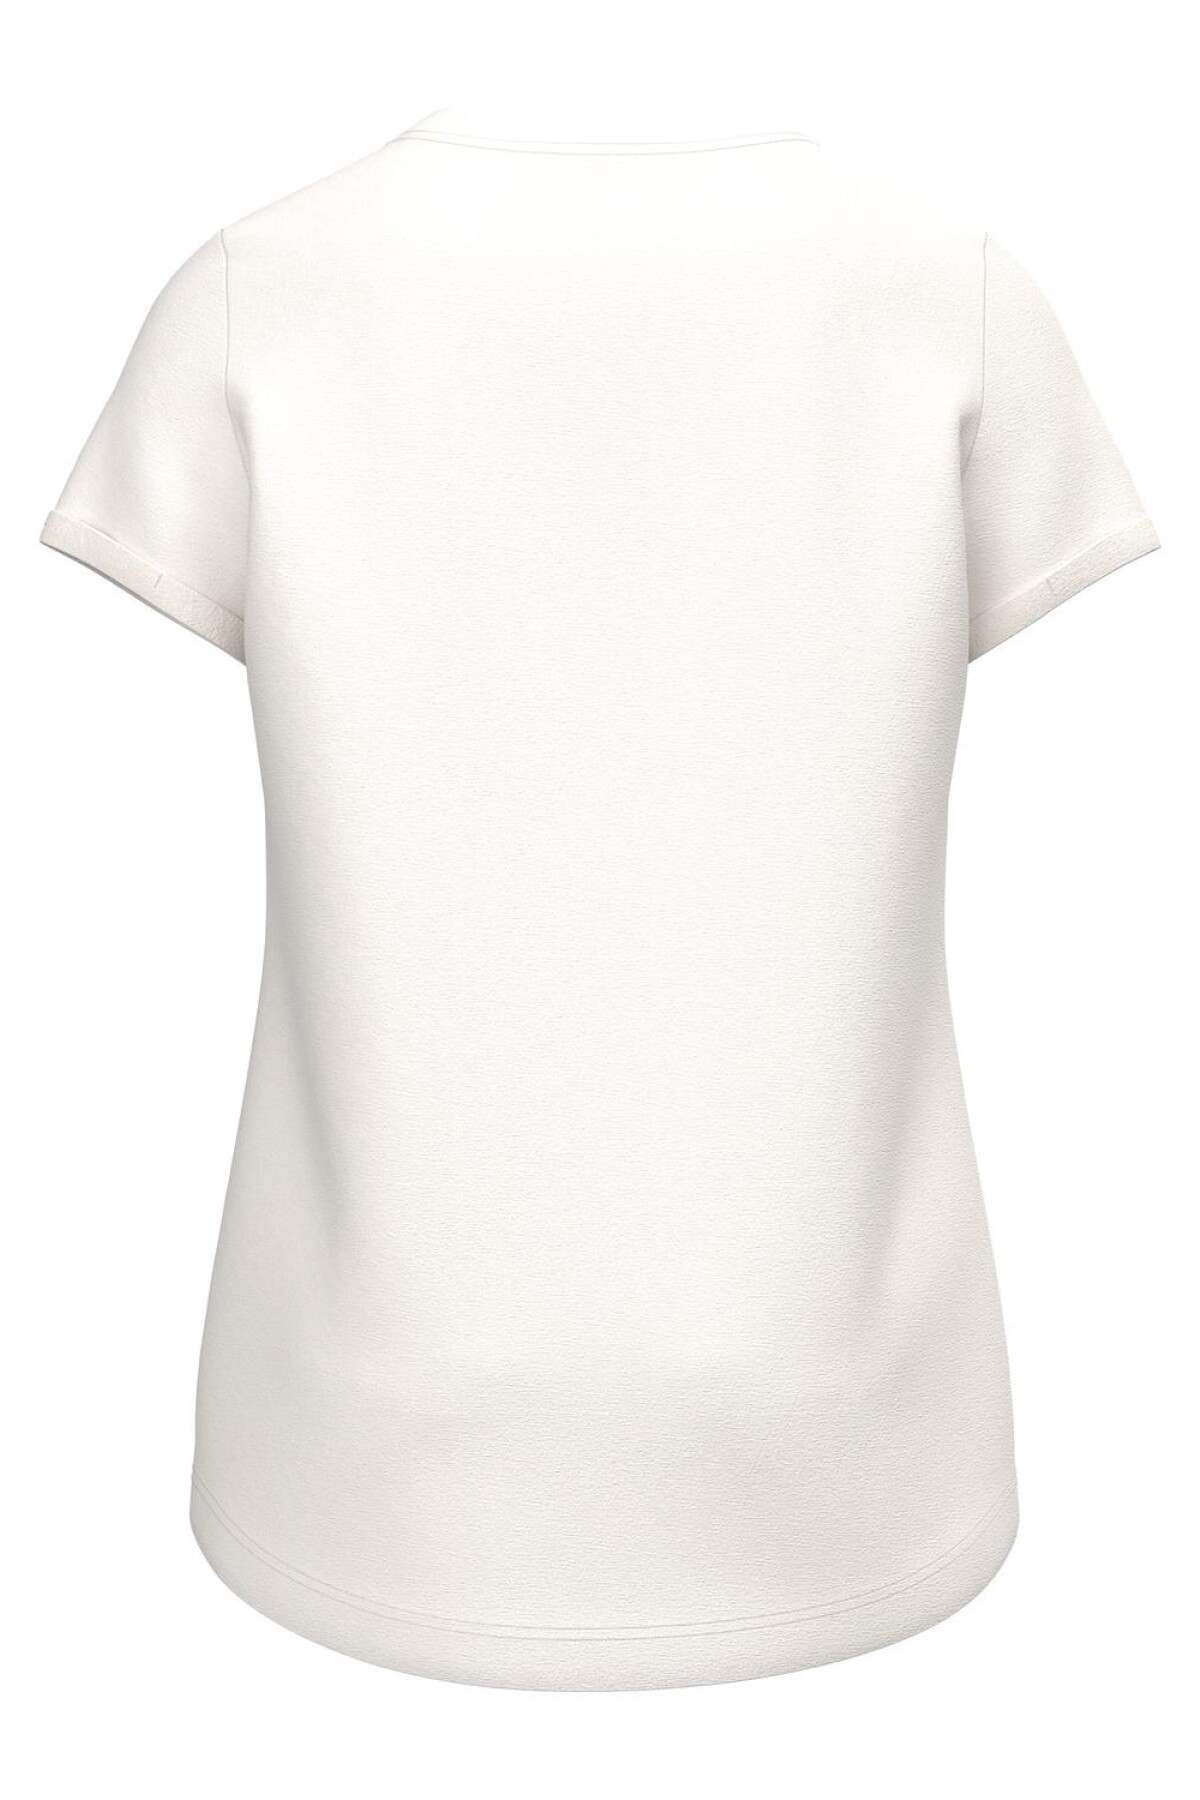 Camiseta Vix White Alyssum